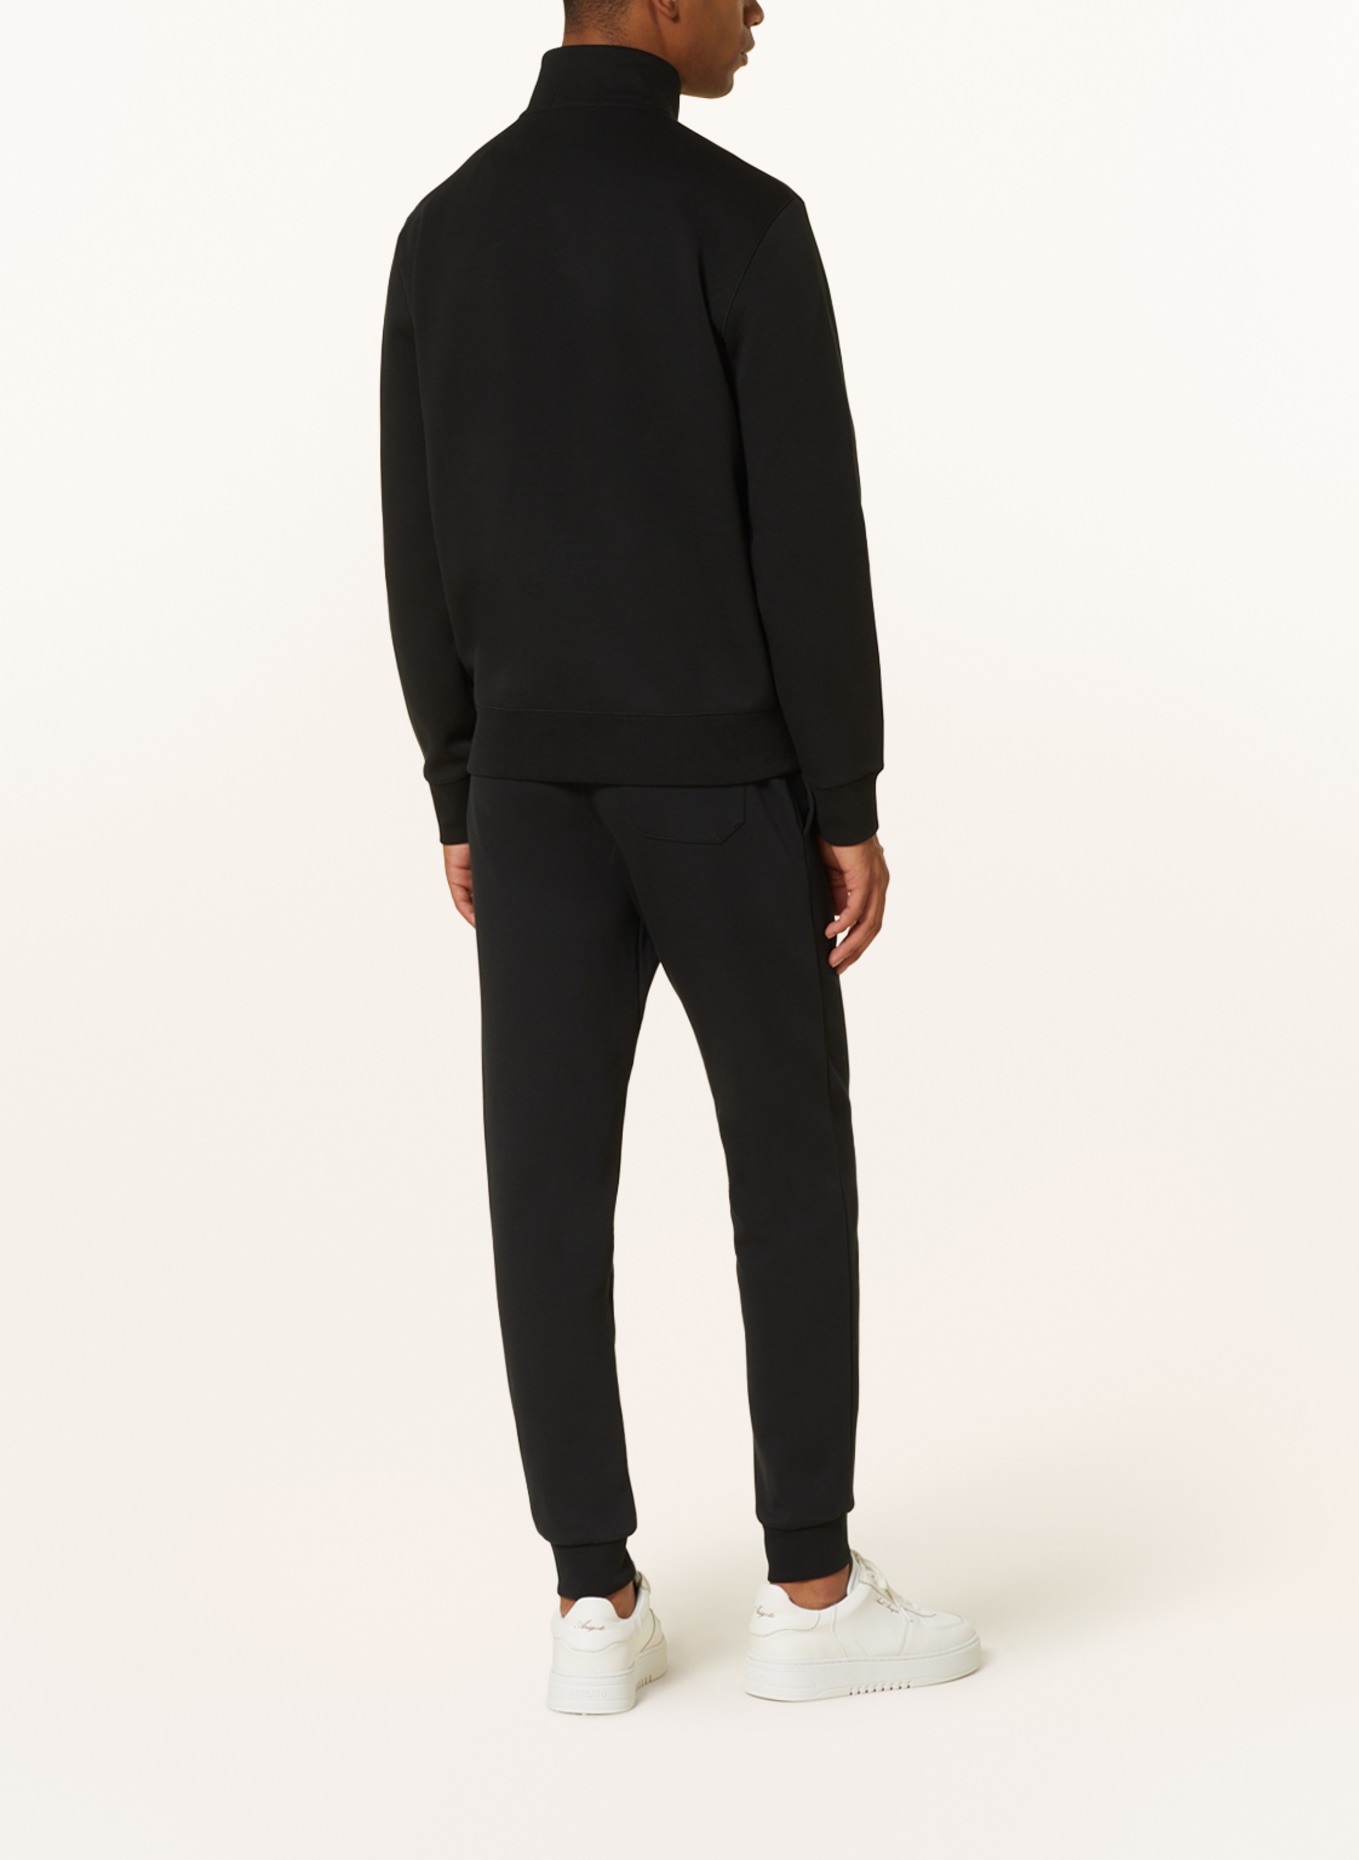 POLO RALPH LAUREN Jersey half-zip sweater, Color: BLACK (Image 3)